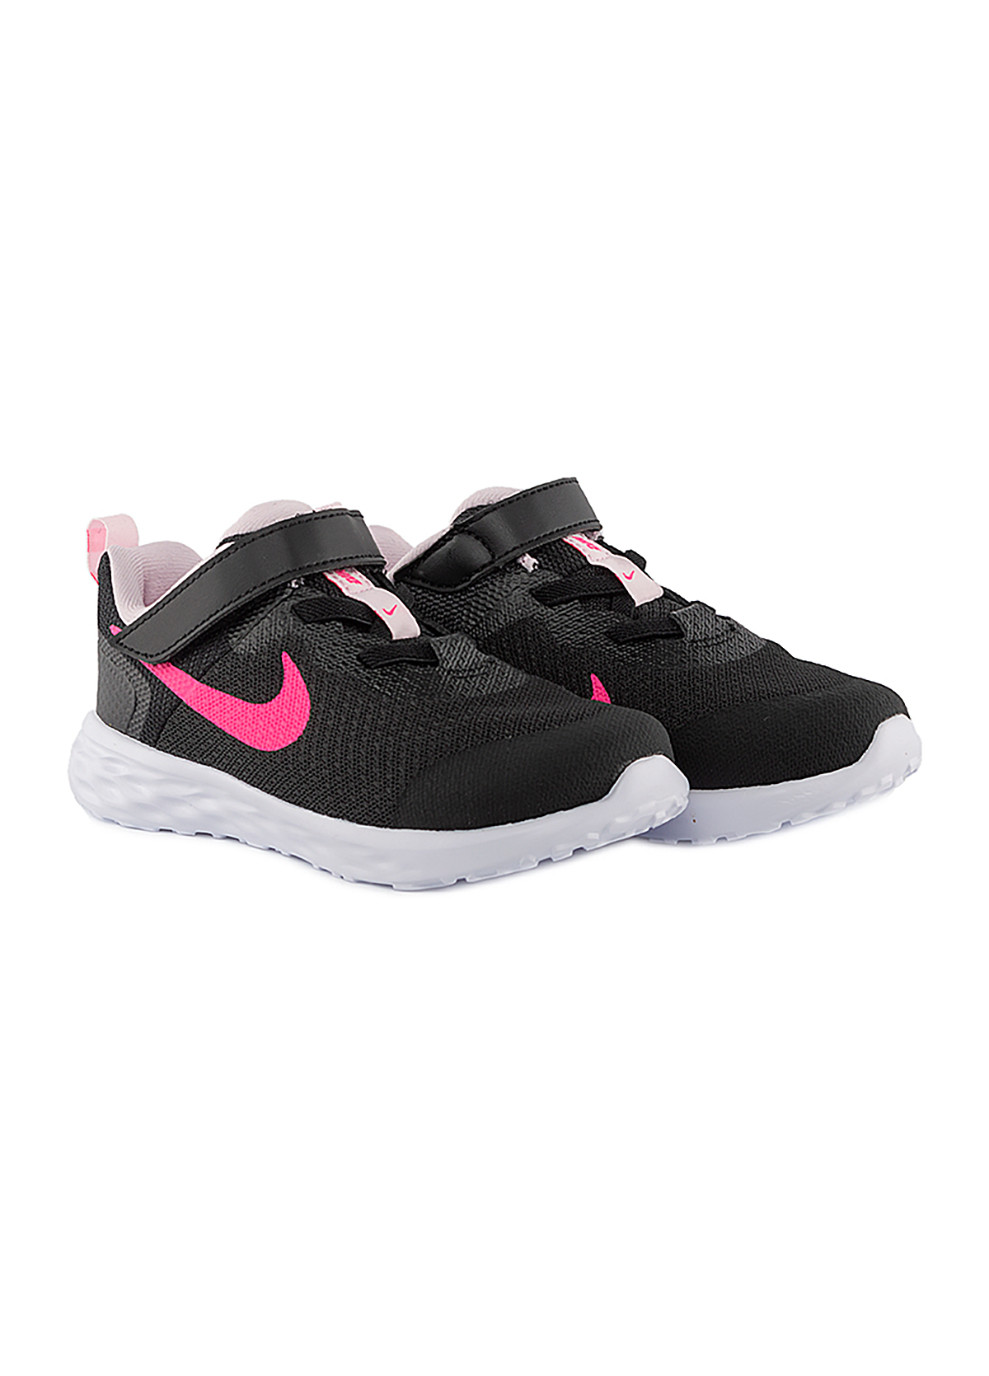 Черные демисезонные детские кроссовки revolution 6 nn (tdv) черный Nike